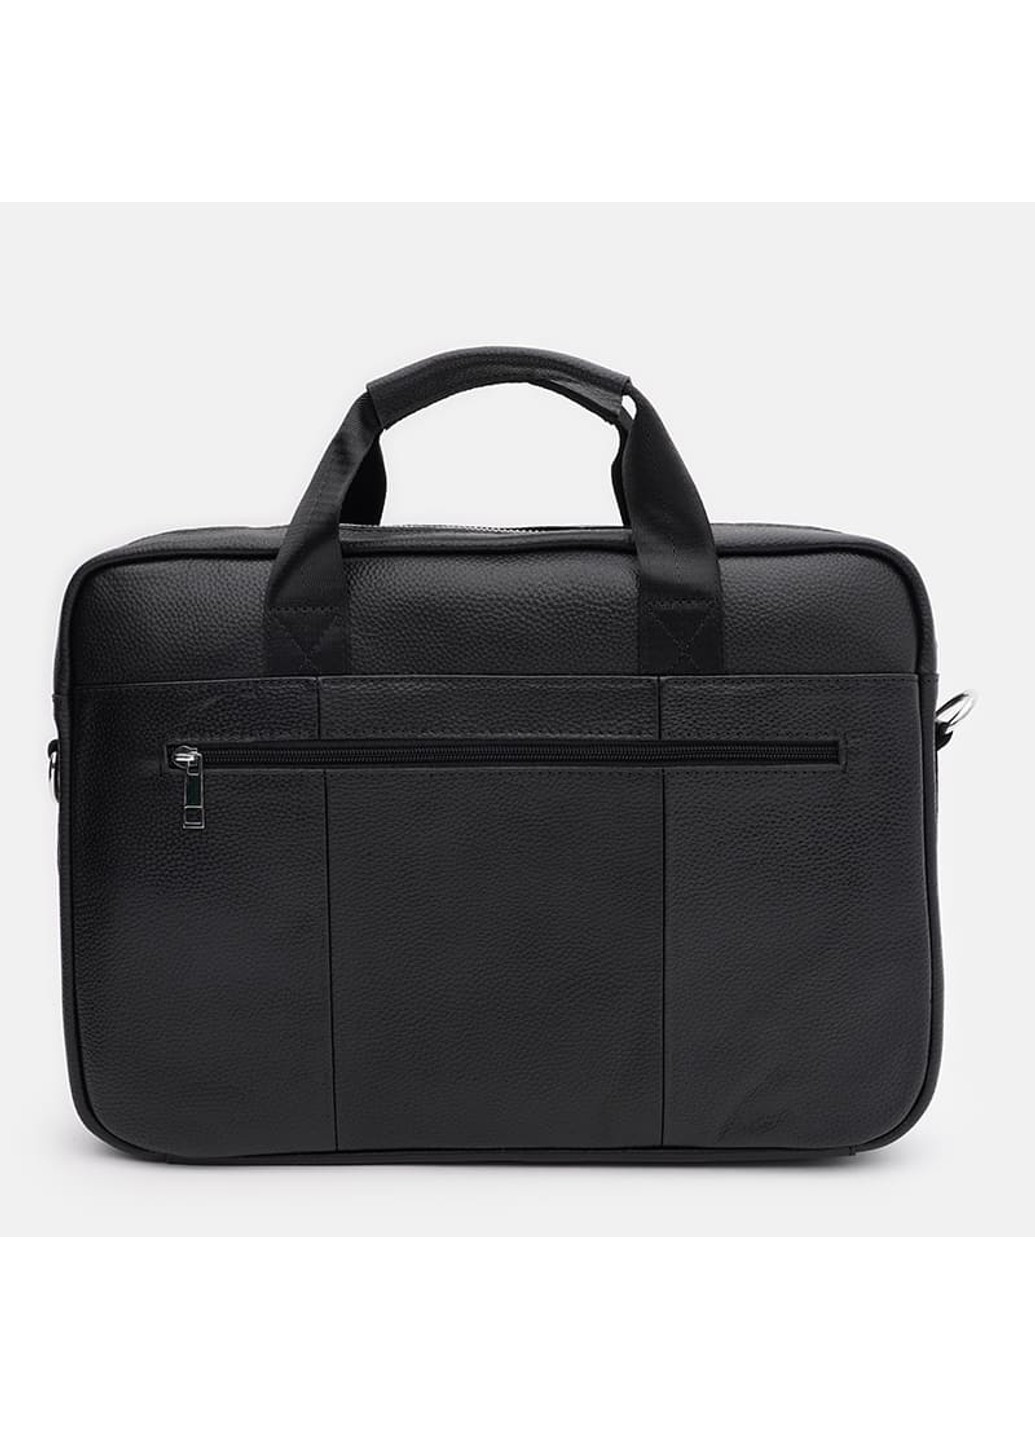 Чоловічі шкіряні сумки - портфель K17067bl-black Keizer (274535898)